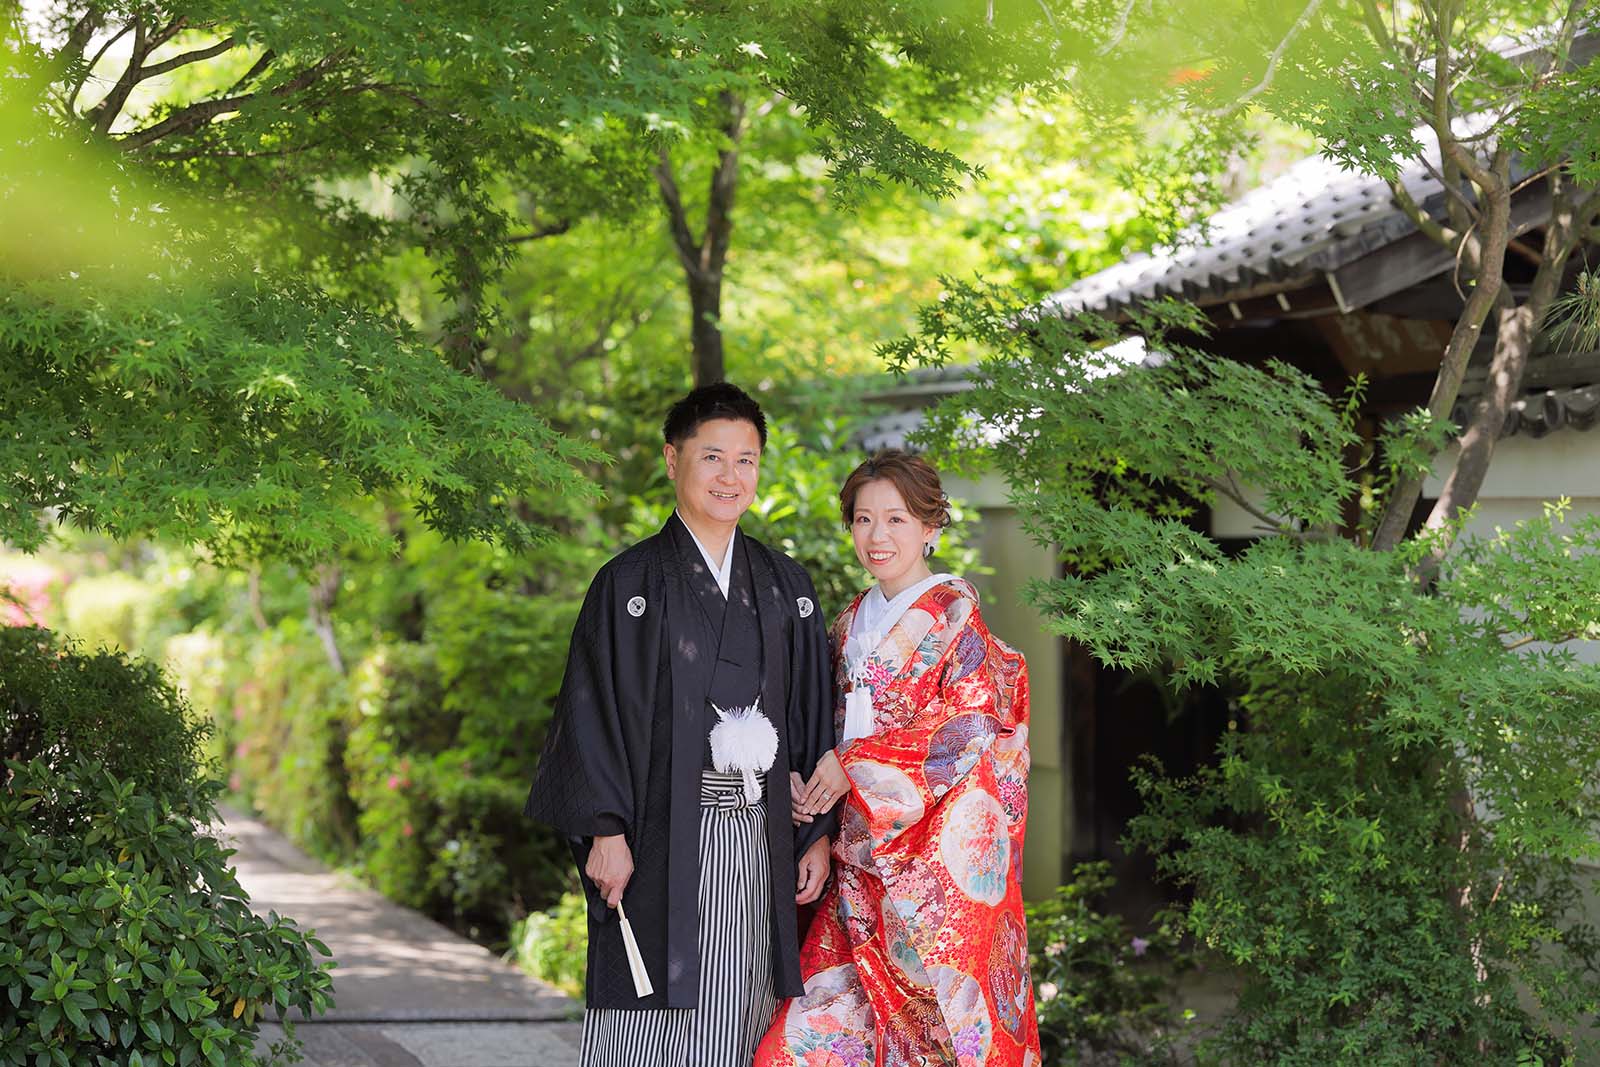 結婚10周年記念に京都で新緑と和装写真